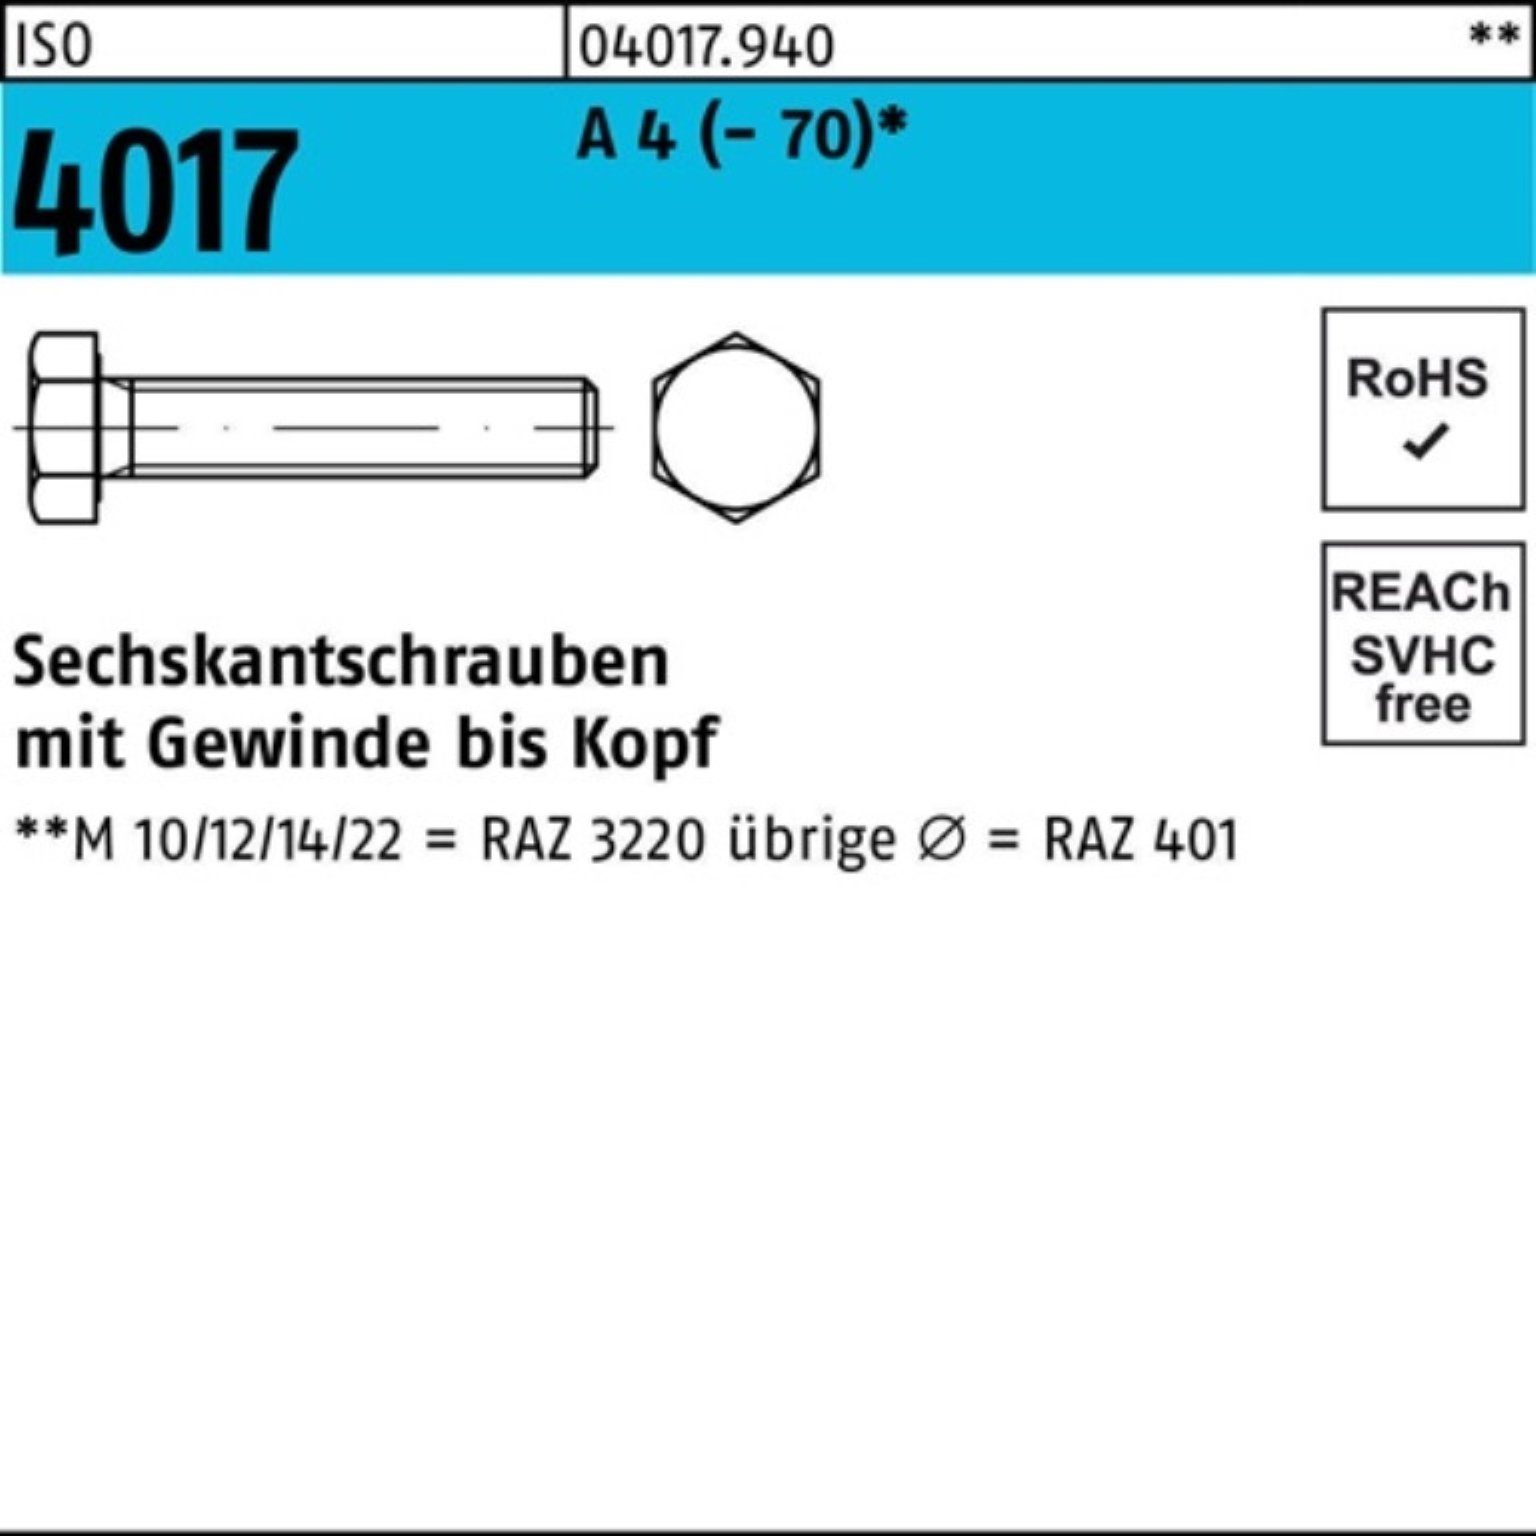 A (70) Pack 4 Sechskantschraube 100er 40 M12x 4017 100 Bufab VG Sechskantschraube ISO Stück